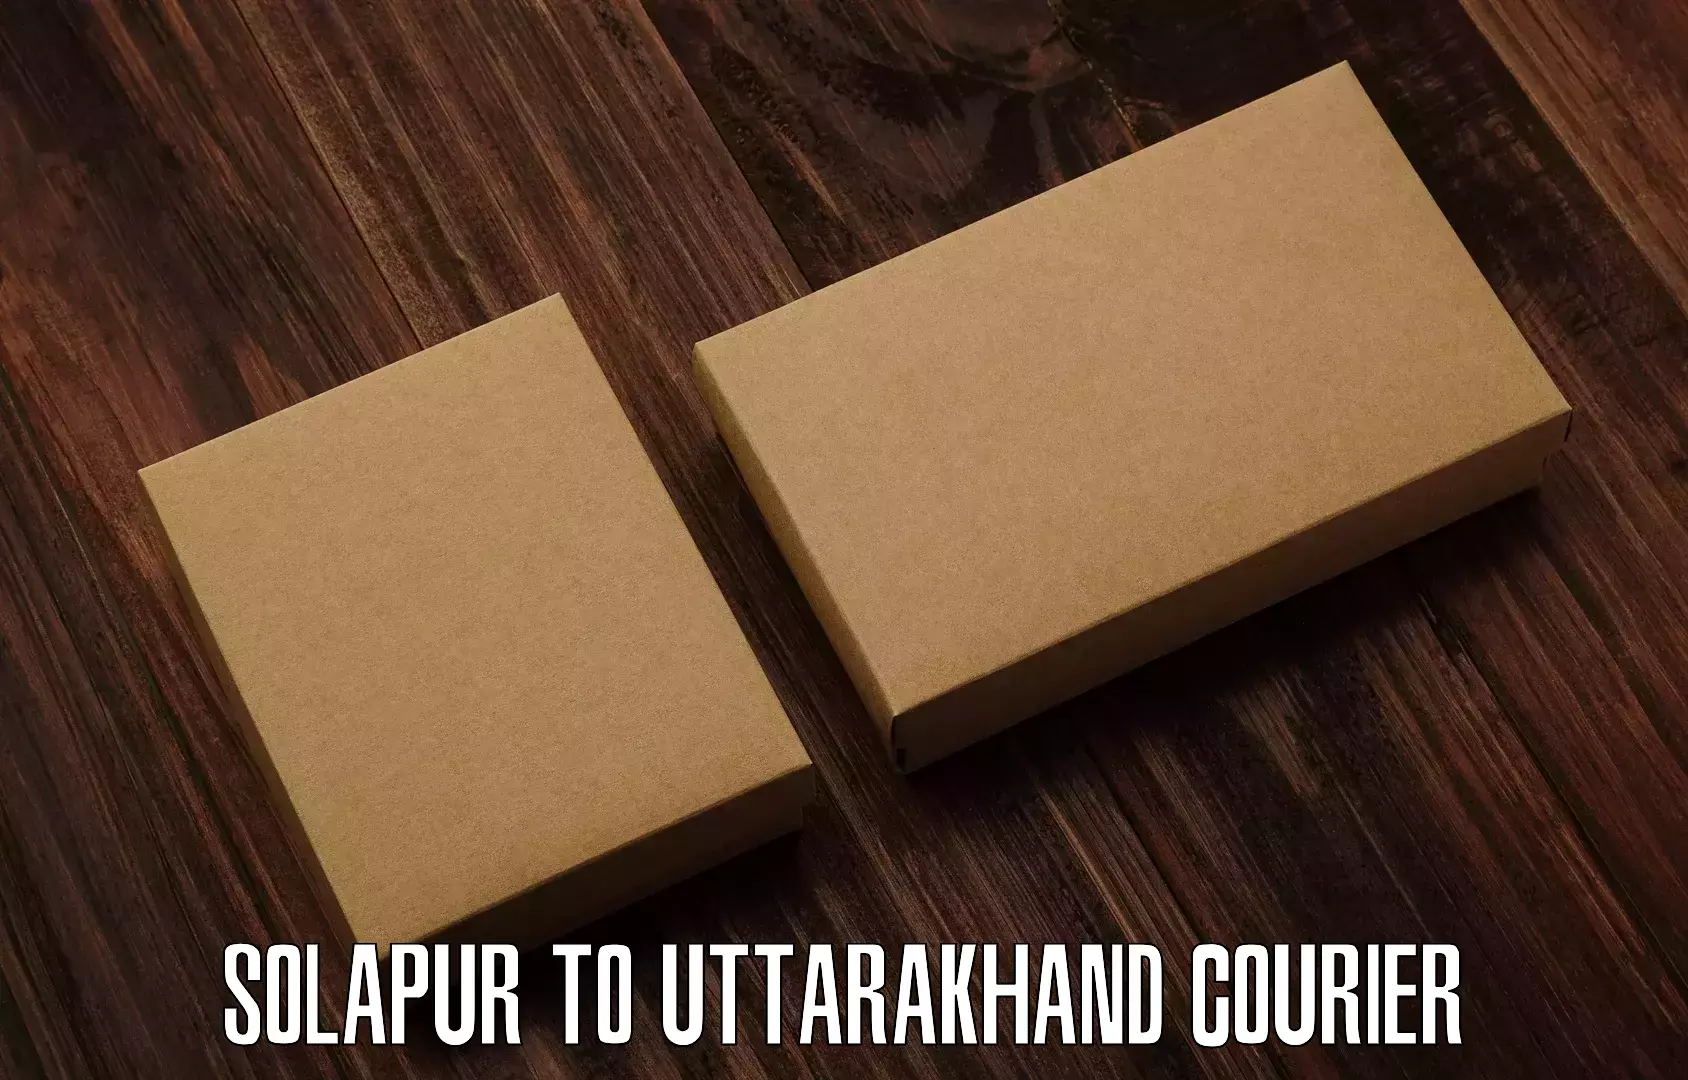 Advanced courier platforms Solapur to Dwarahat